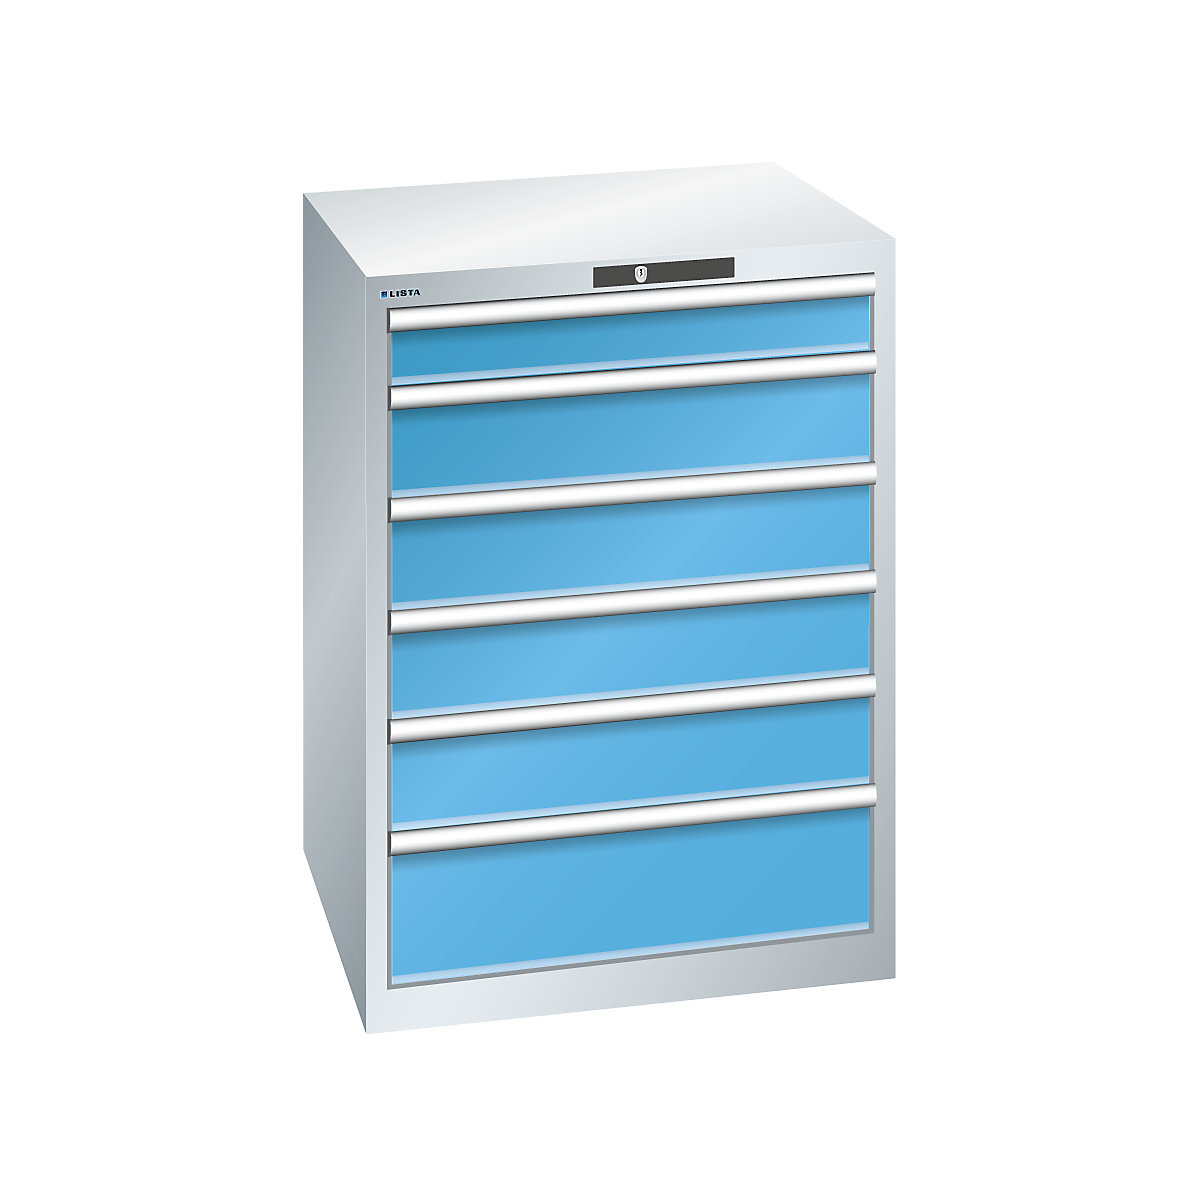 LISTA – Armoire à tiroirs en tôle d'acier, h x l 1000 x 717 mm, 6 tiroirs, gris clair / bleu clair